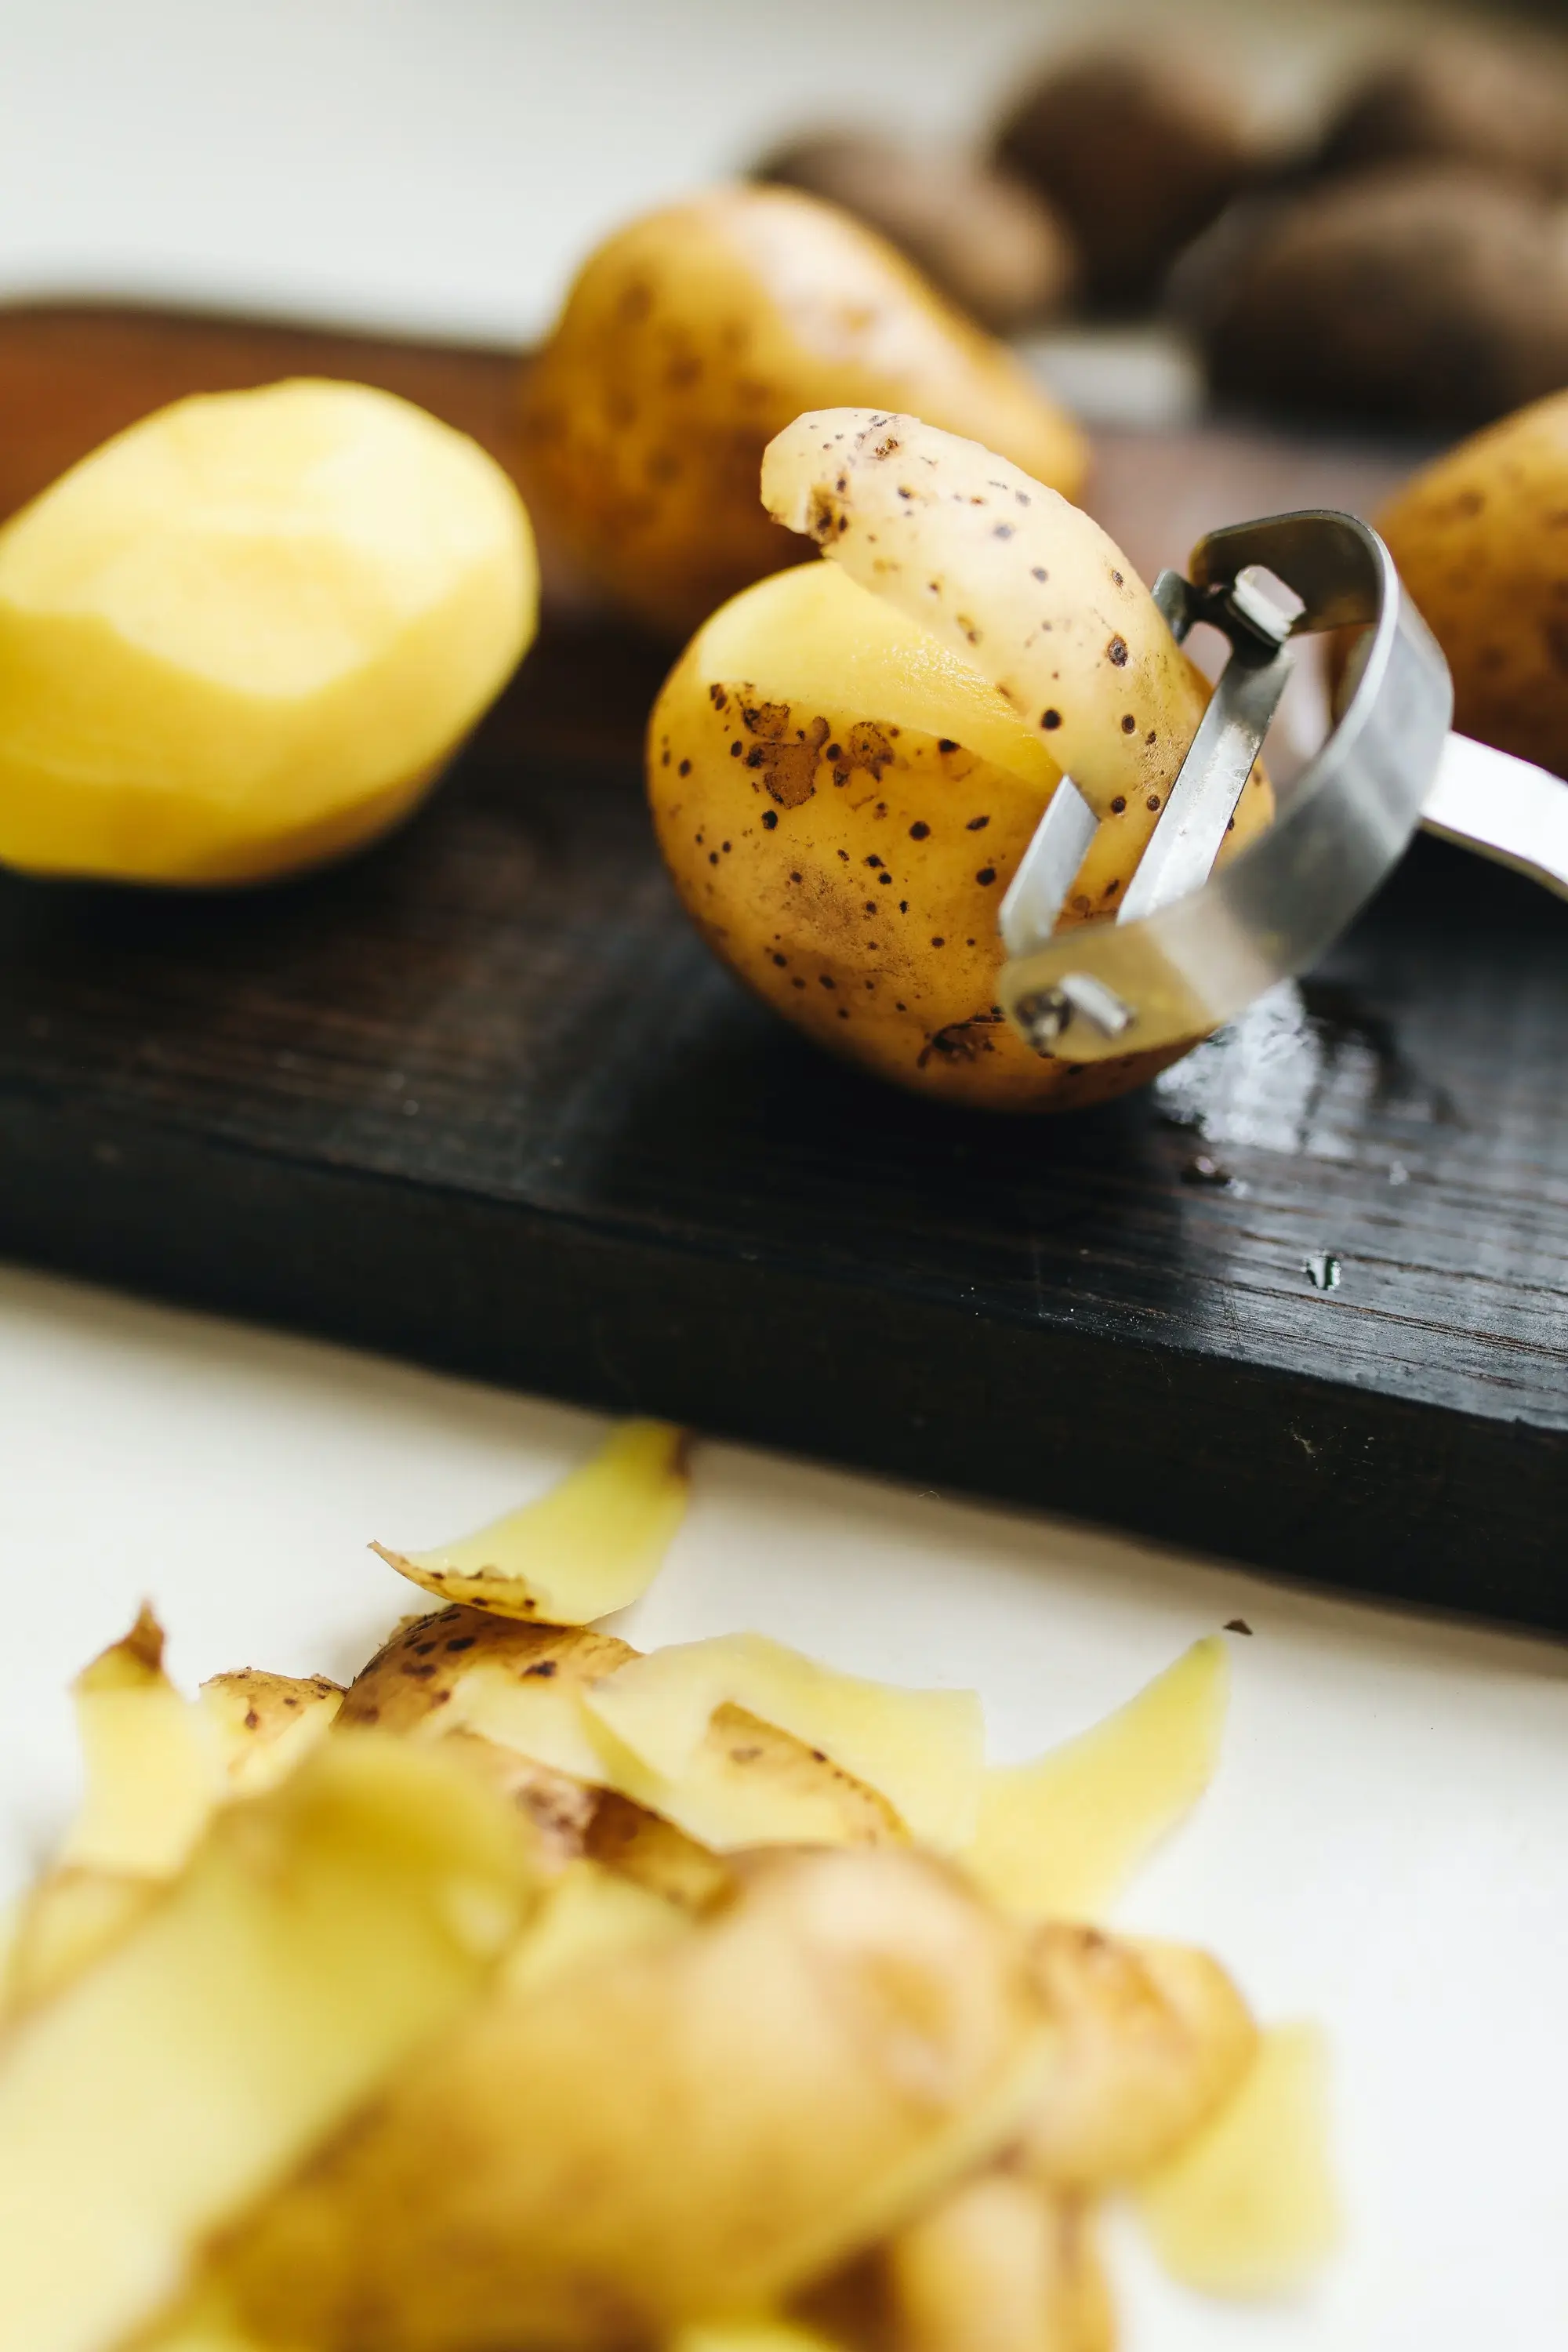 कच्च्या बटाट्याचा रस कापसाच्या बोळ्याने डोळ्यांवर लावावा. यातही कापूस या रसात भिजवून तो डोळ्यांवर ठेवावा.